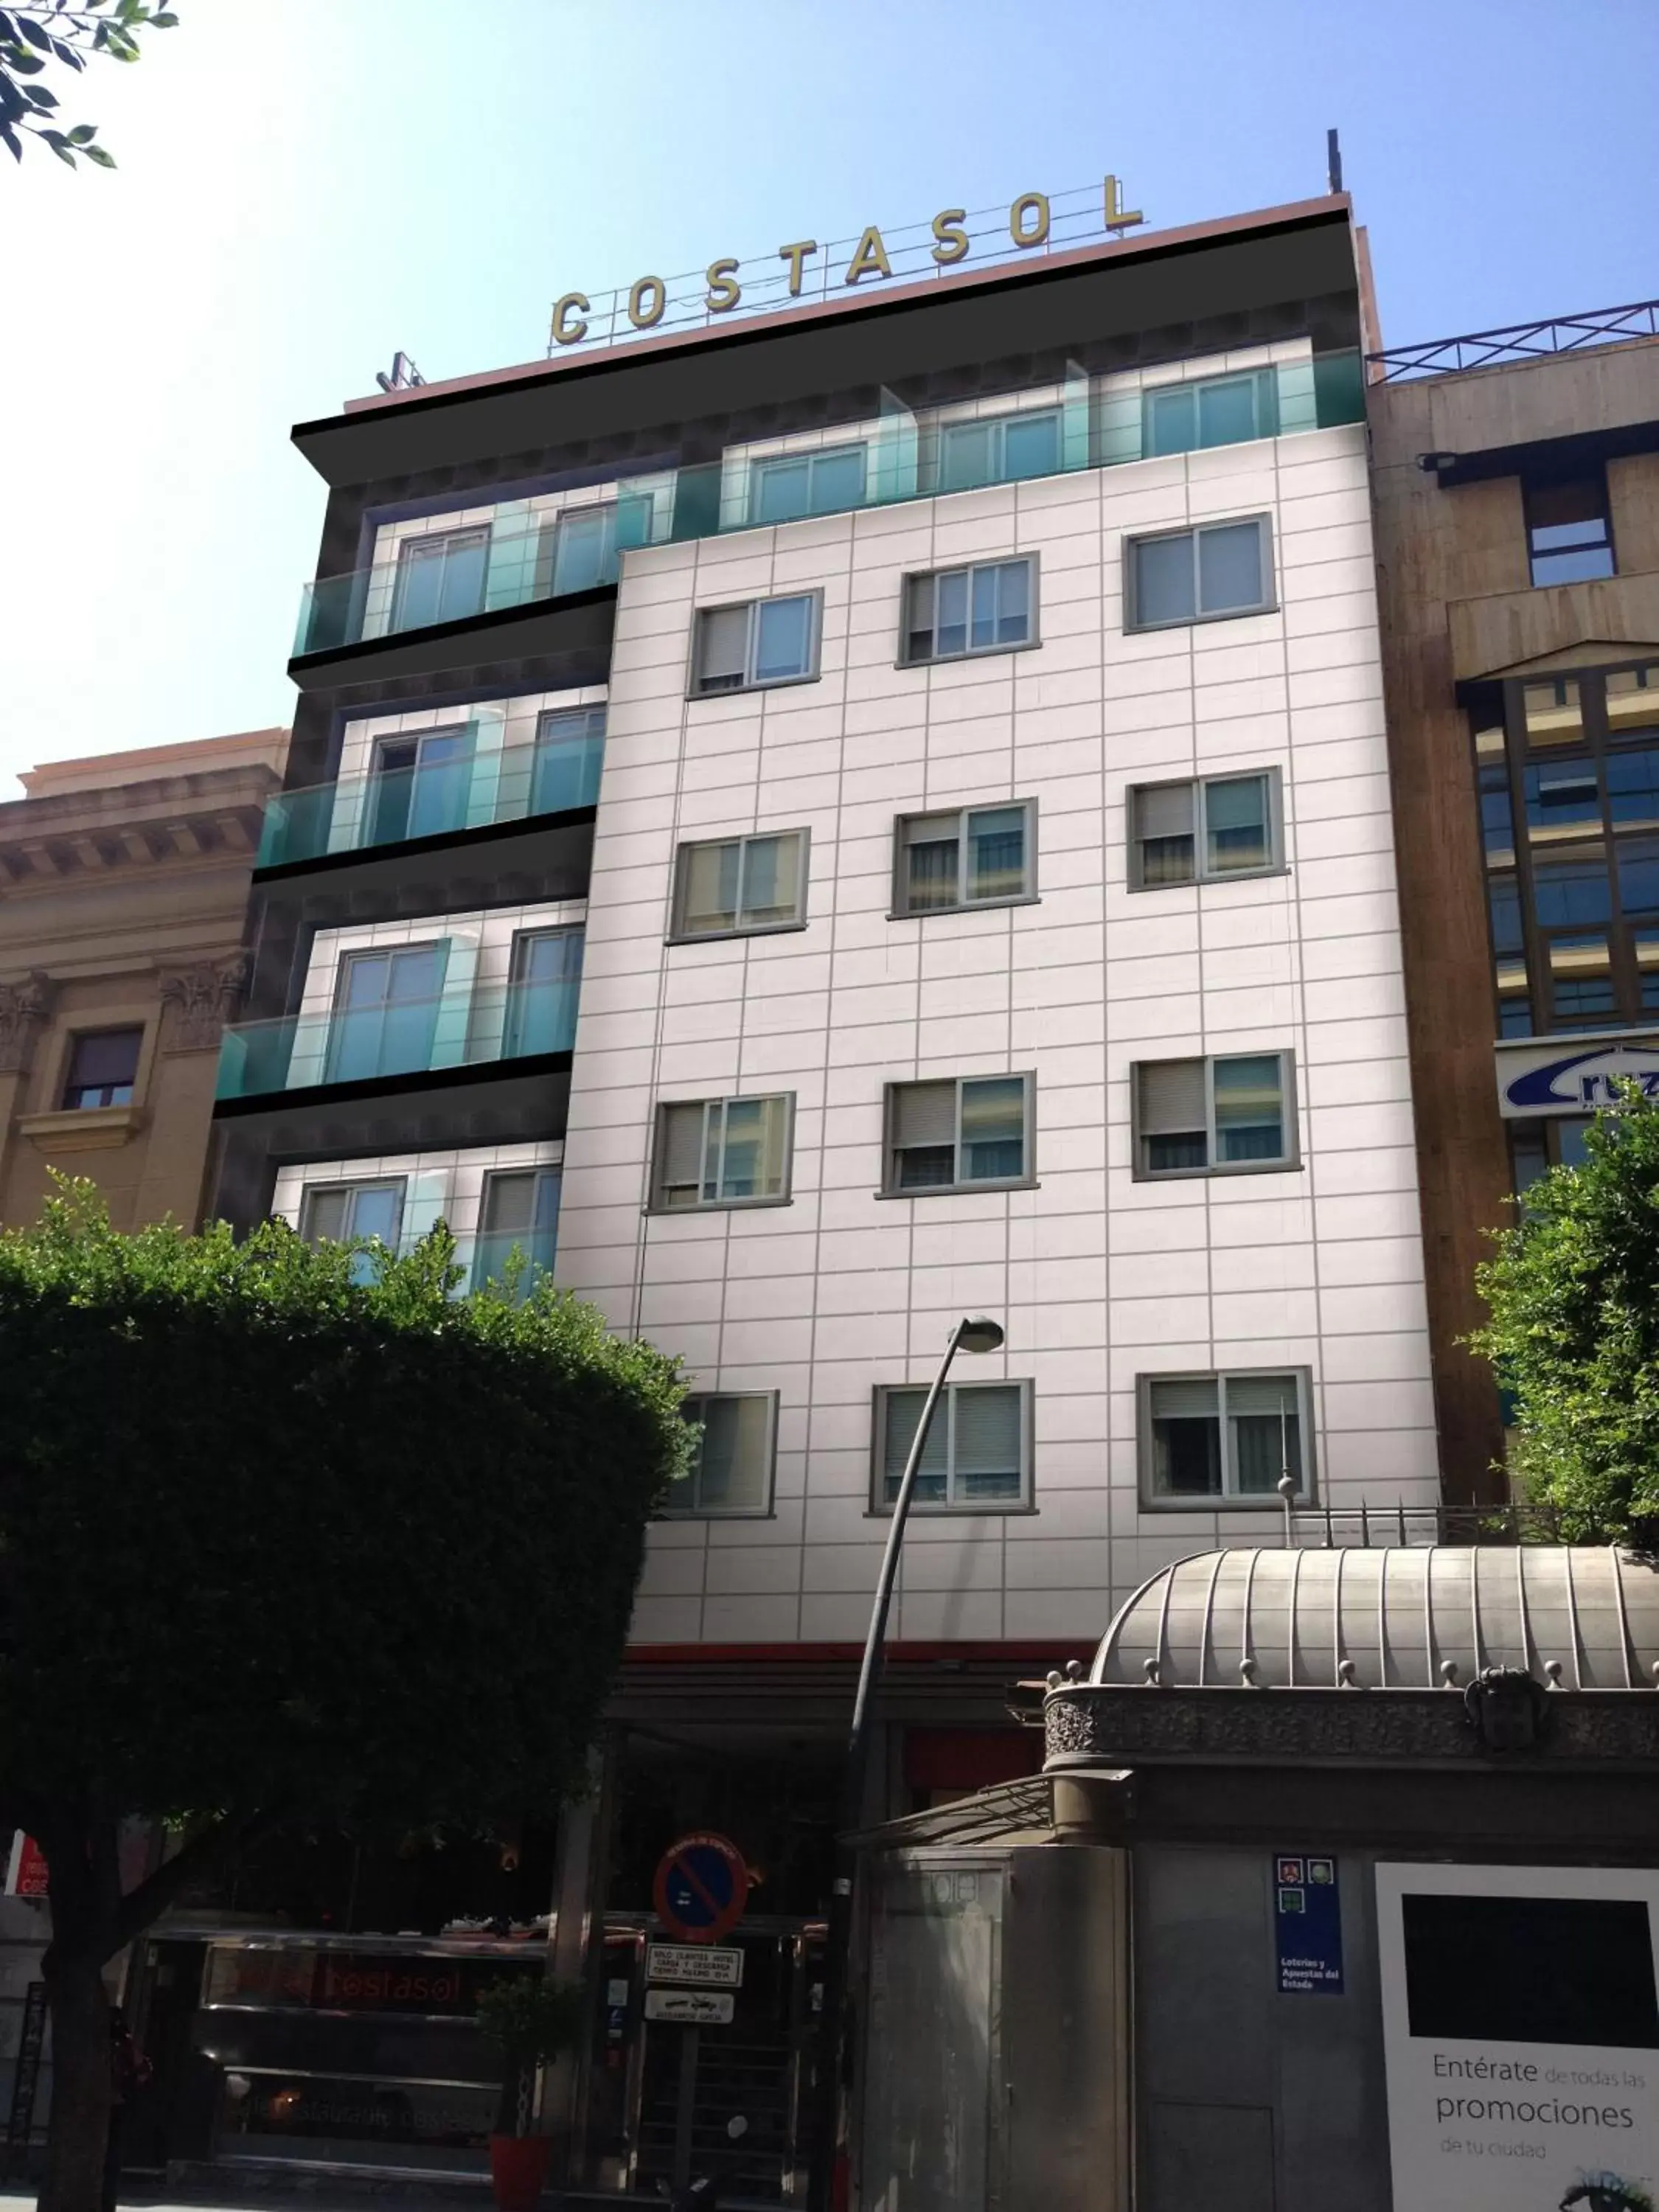 Facade/entrance, Property Building in Hotel Costasol